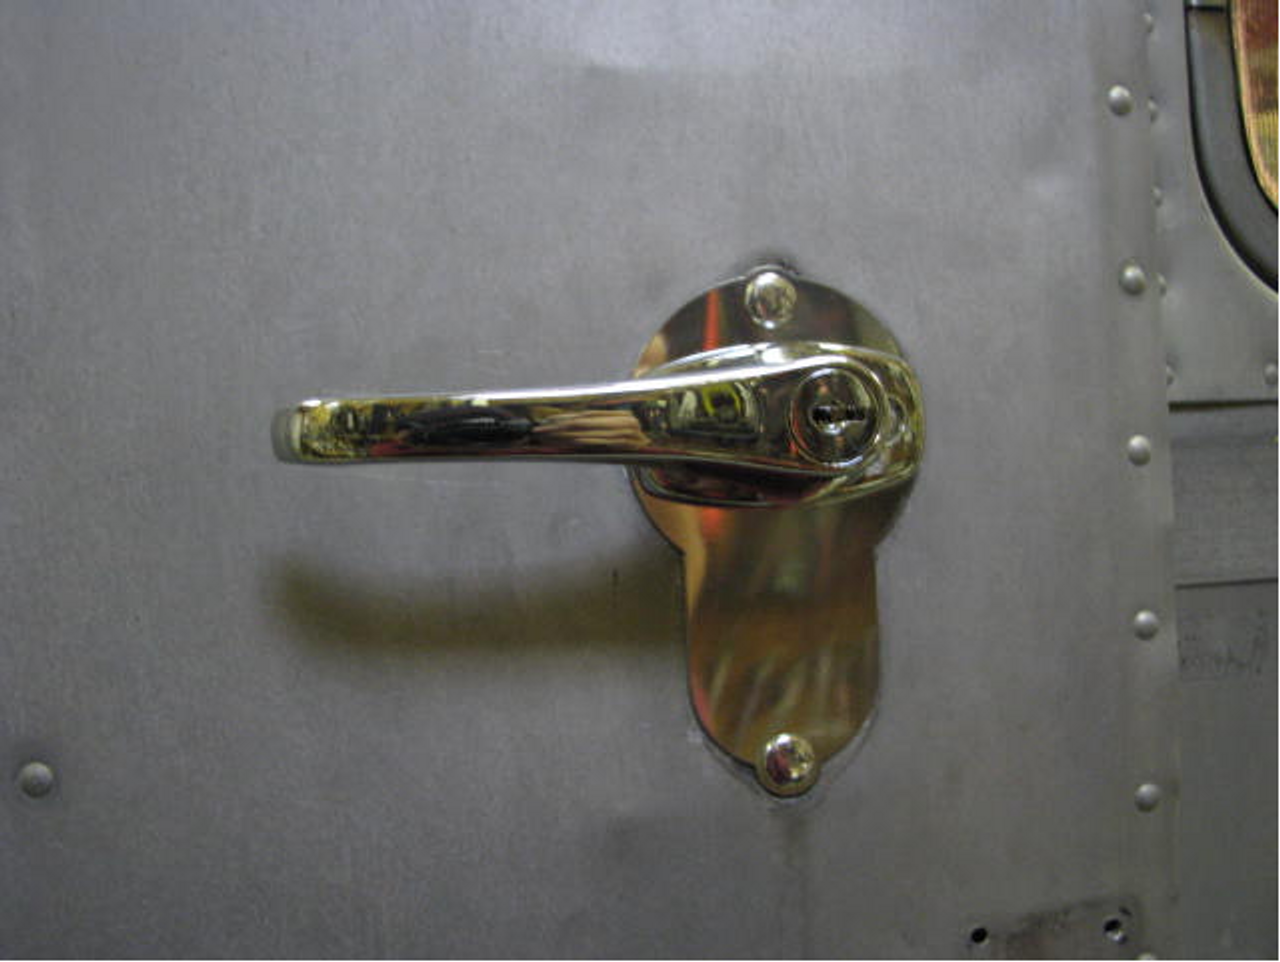 New handle installed on door